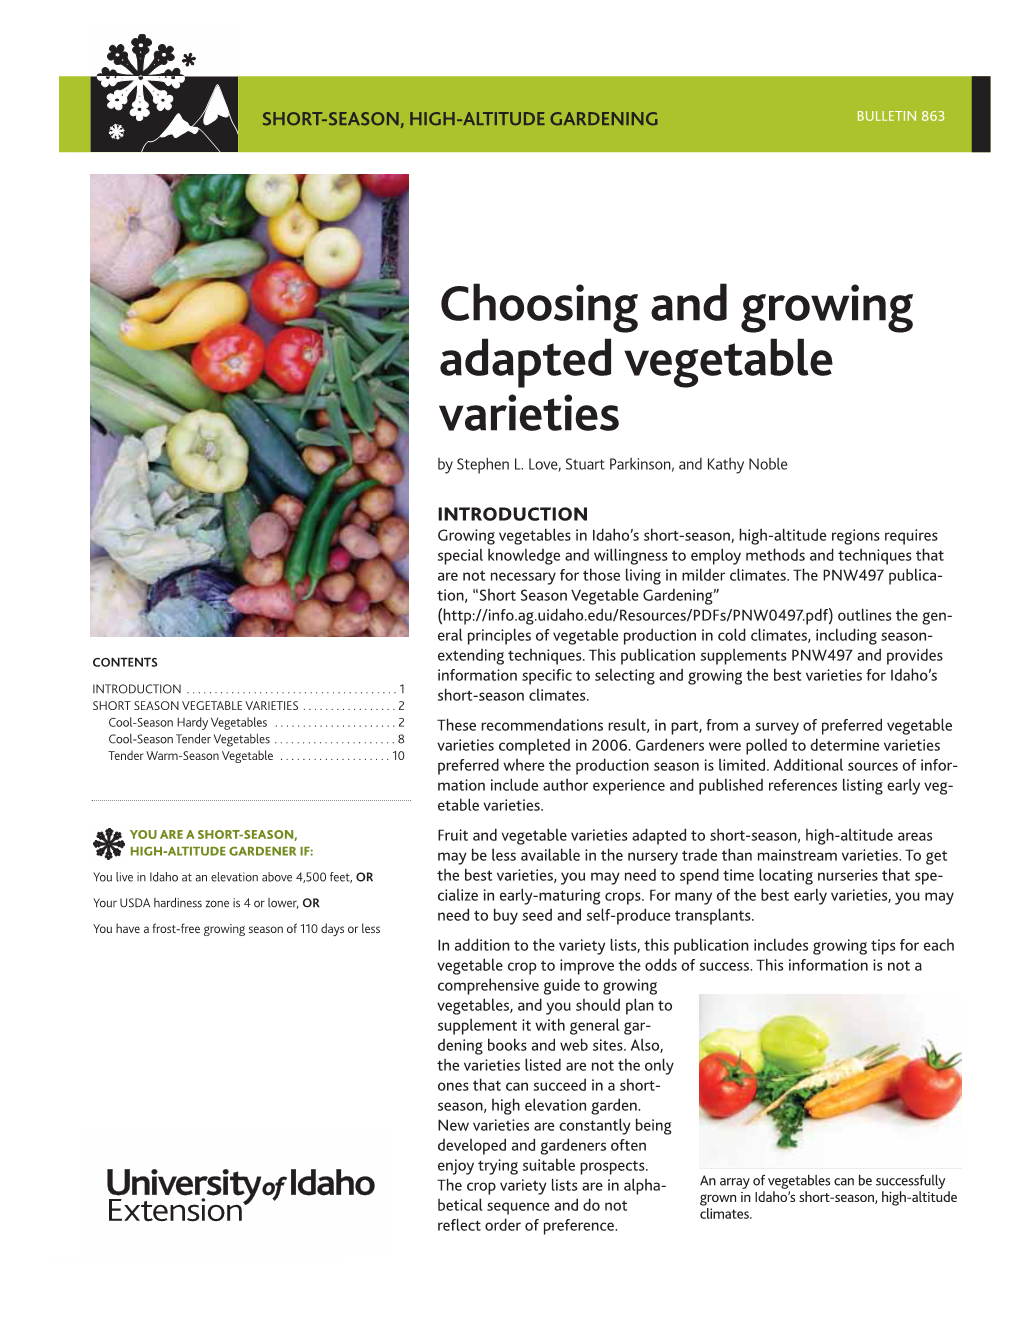 Choosing and Growing Adapted Vegetable Varieties by Stephen L